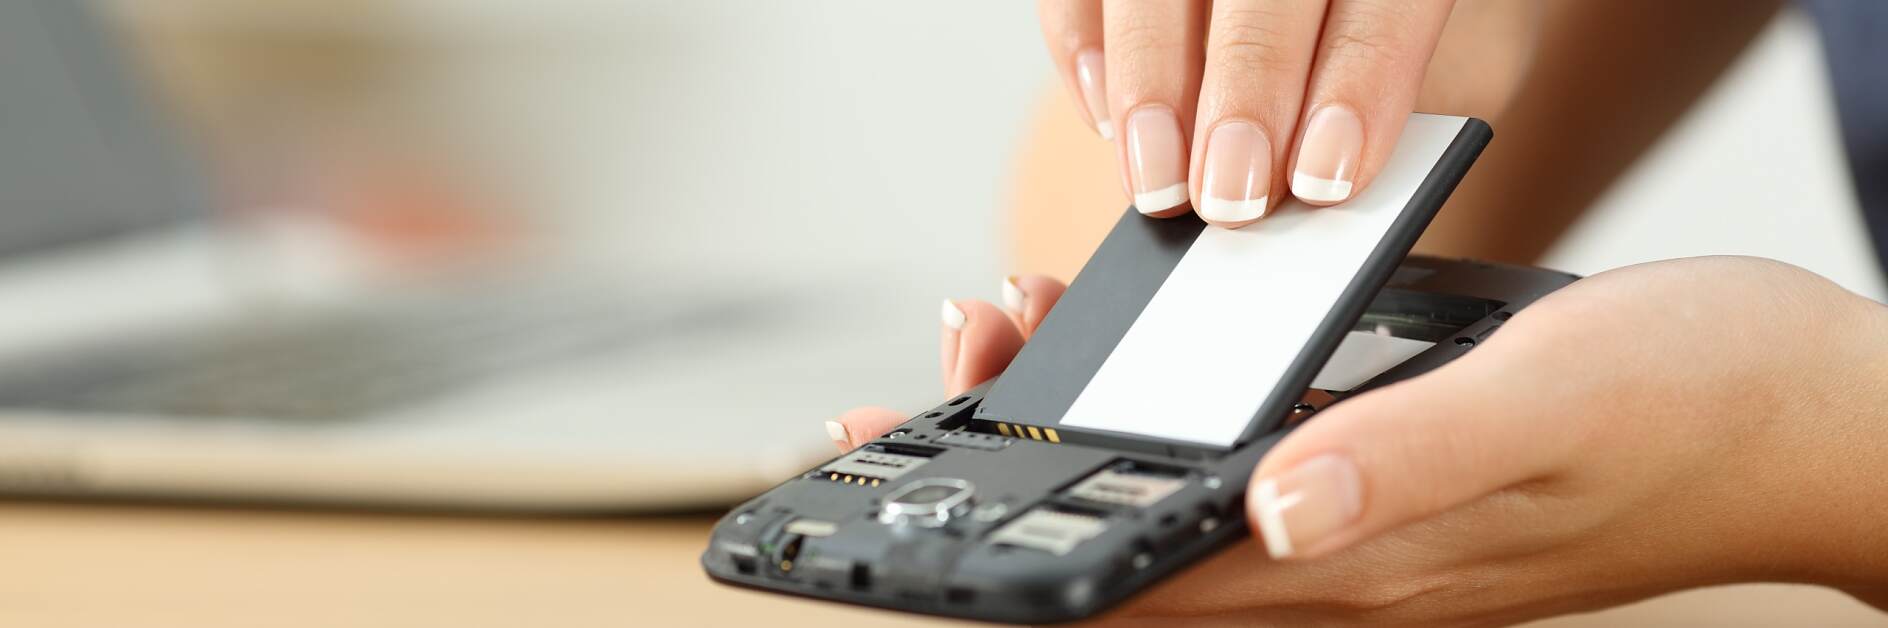 Weibliche Hand platziert Batterie in einem Smartphone